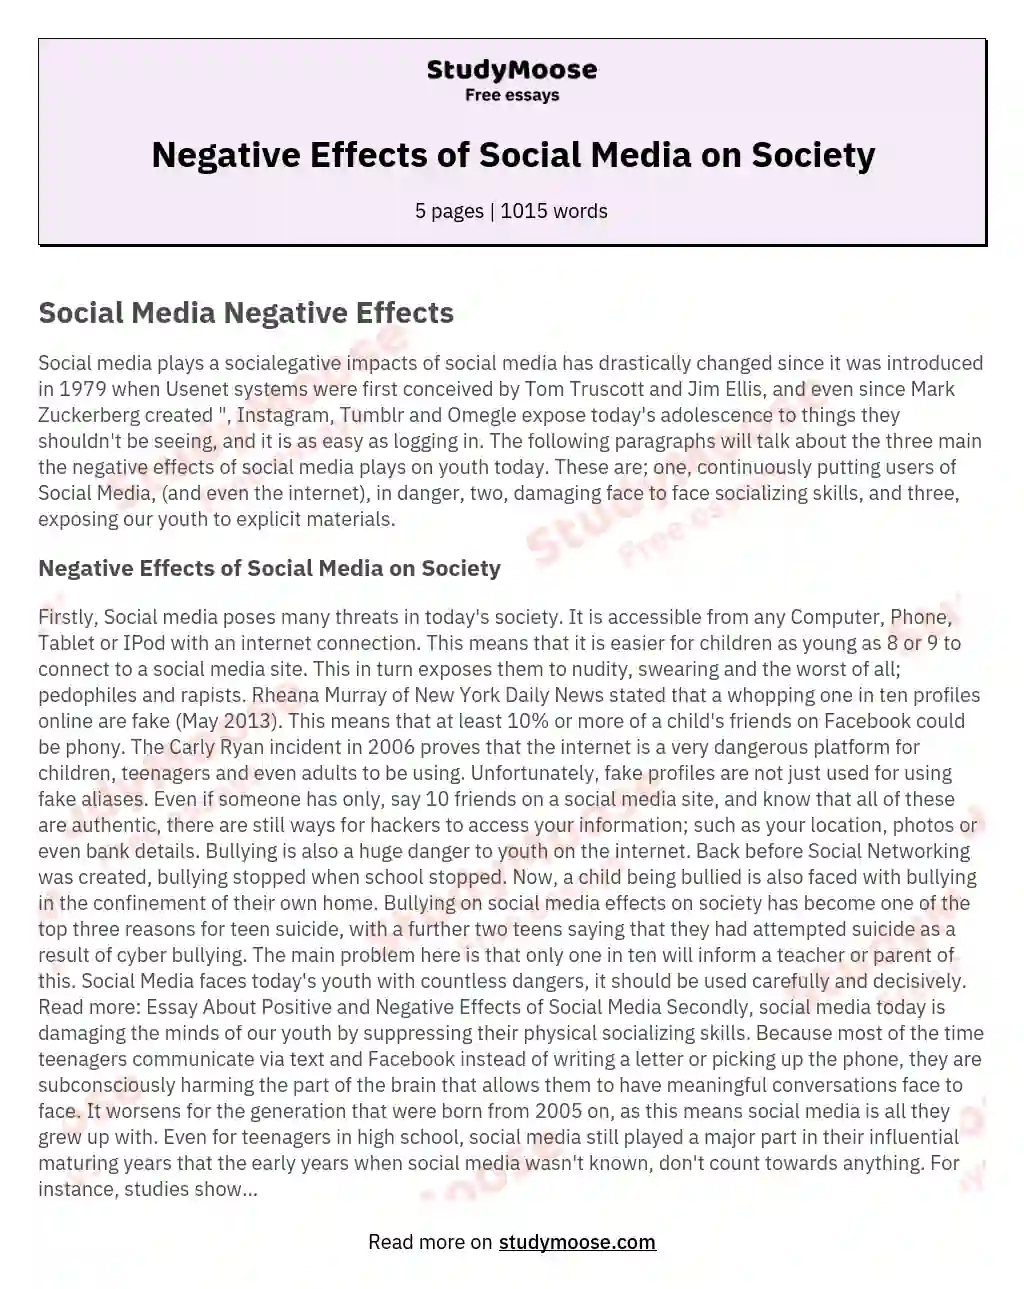 effect of social media on society essay